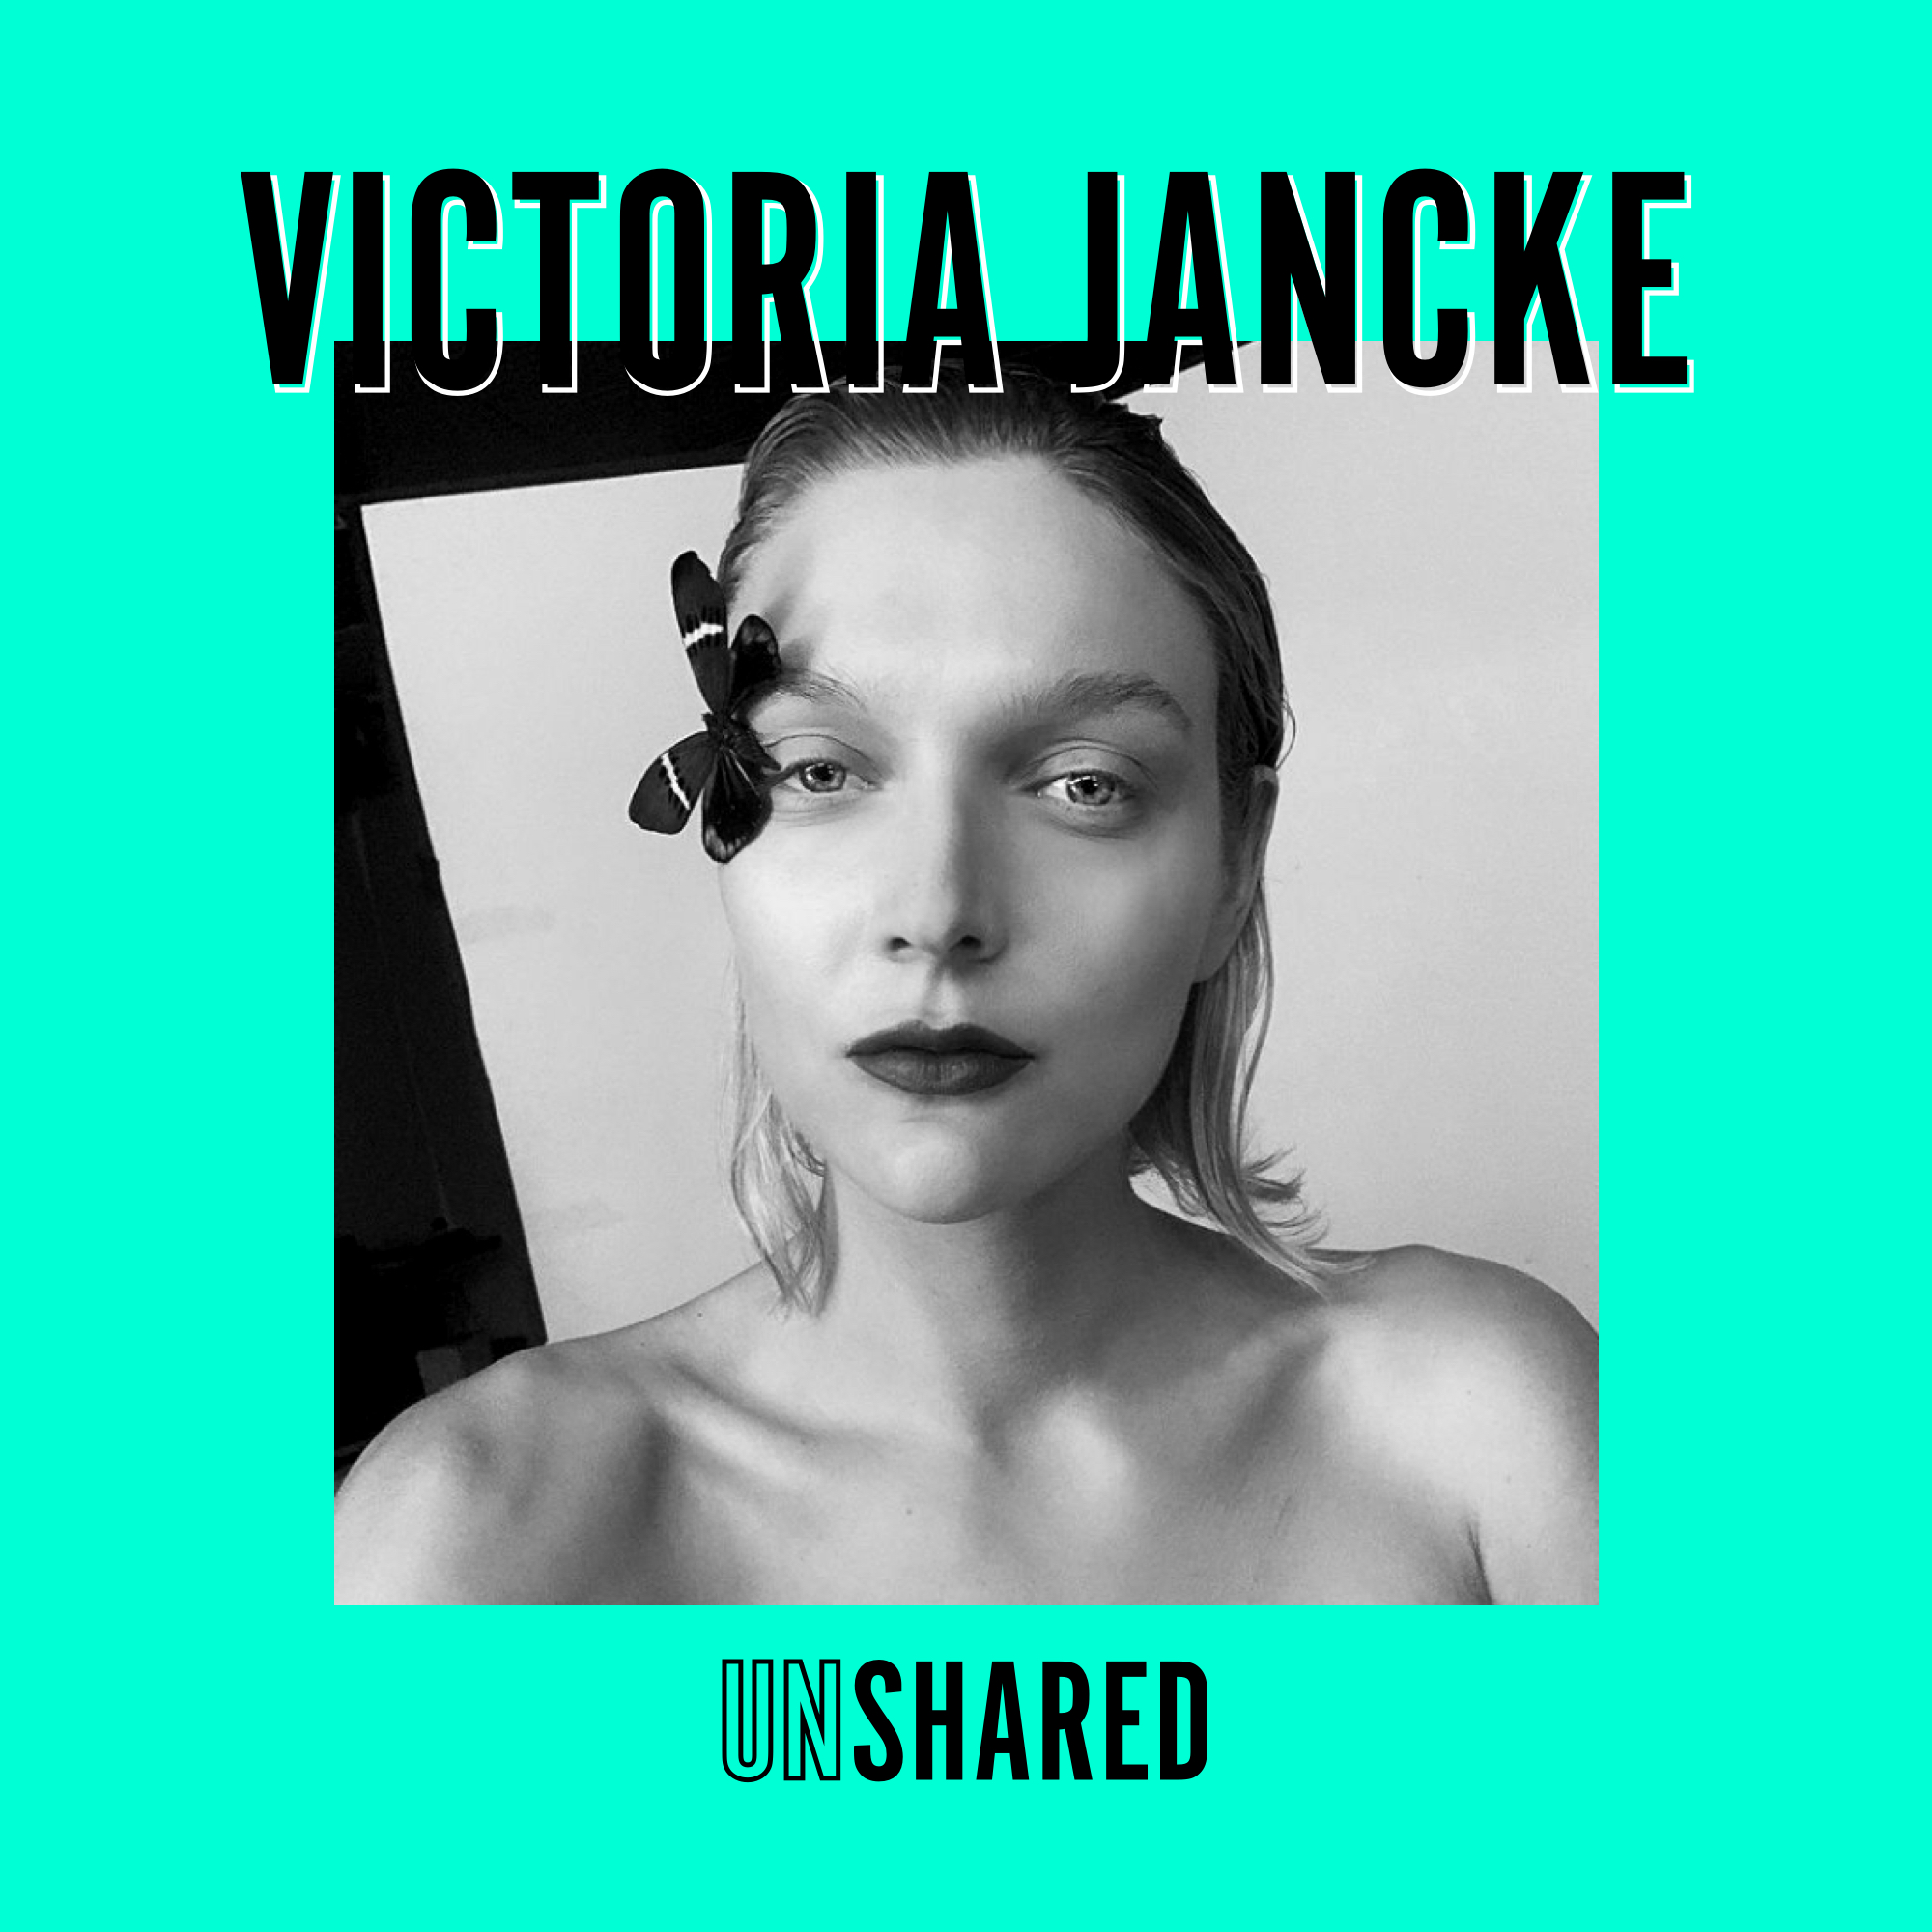 Victoria Jancke - Das Leben von seiner schönsten und schlimmsten Seite